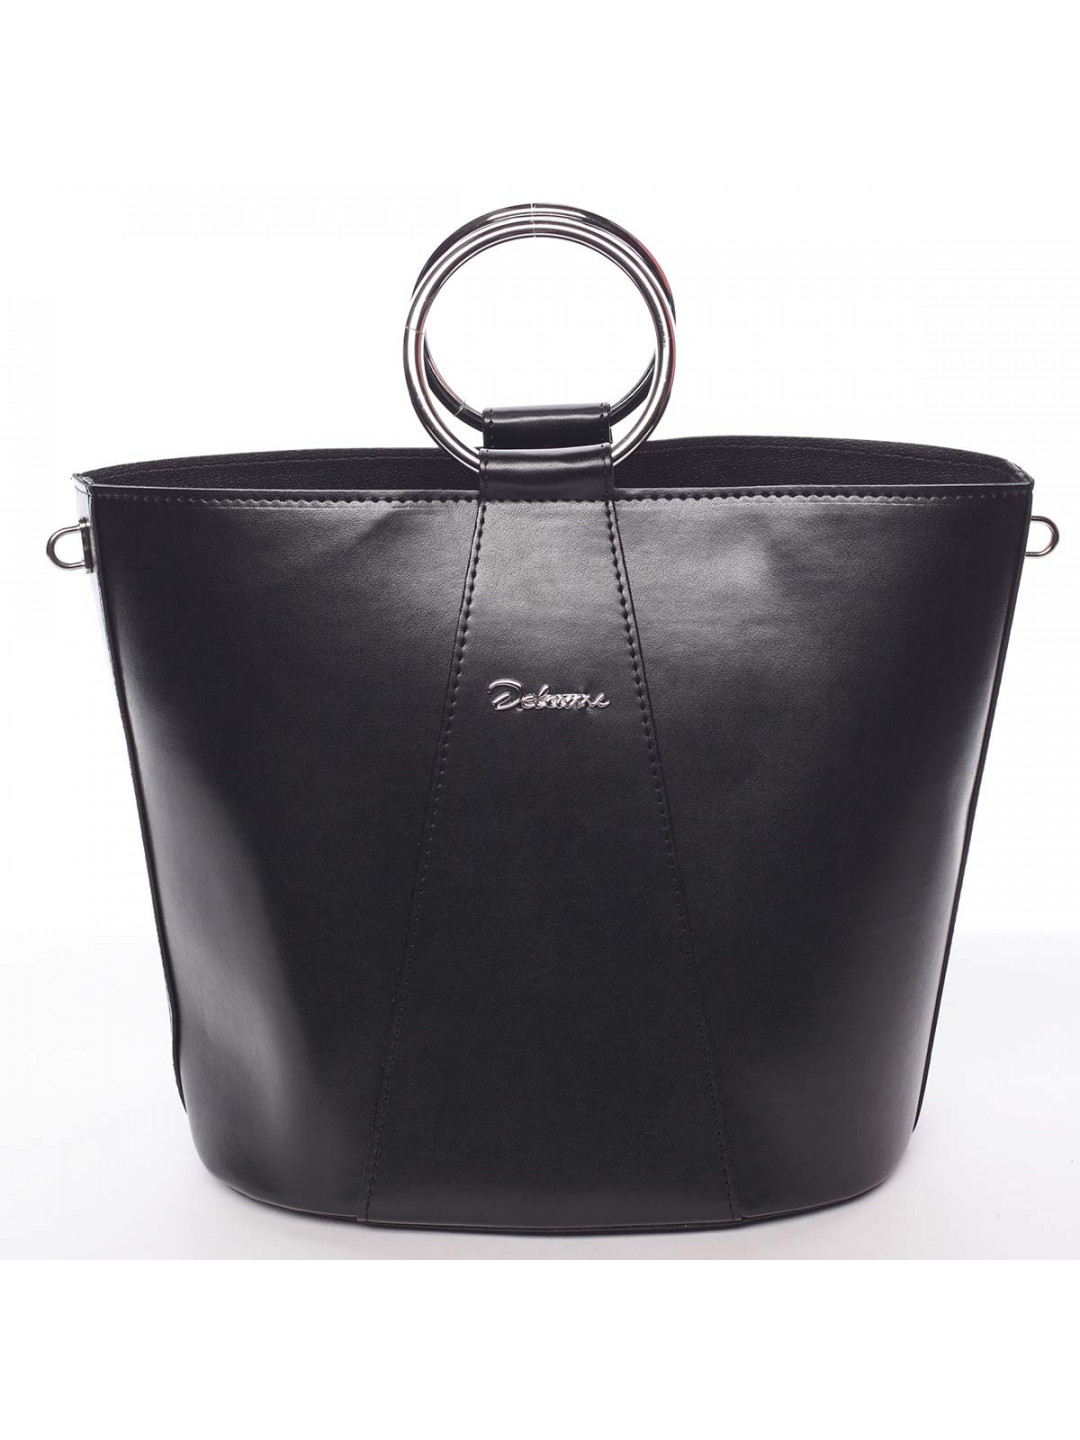 Nadčasová dámská kabelka s organizérem černá – Delami Karsyn